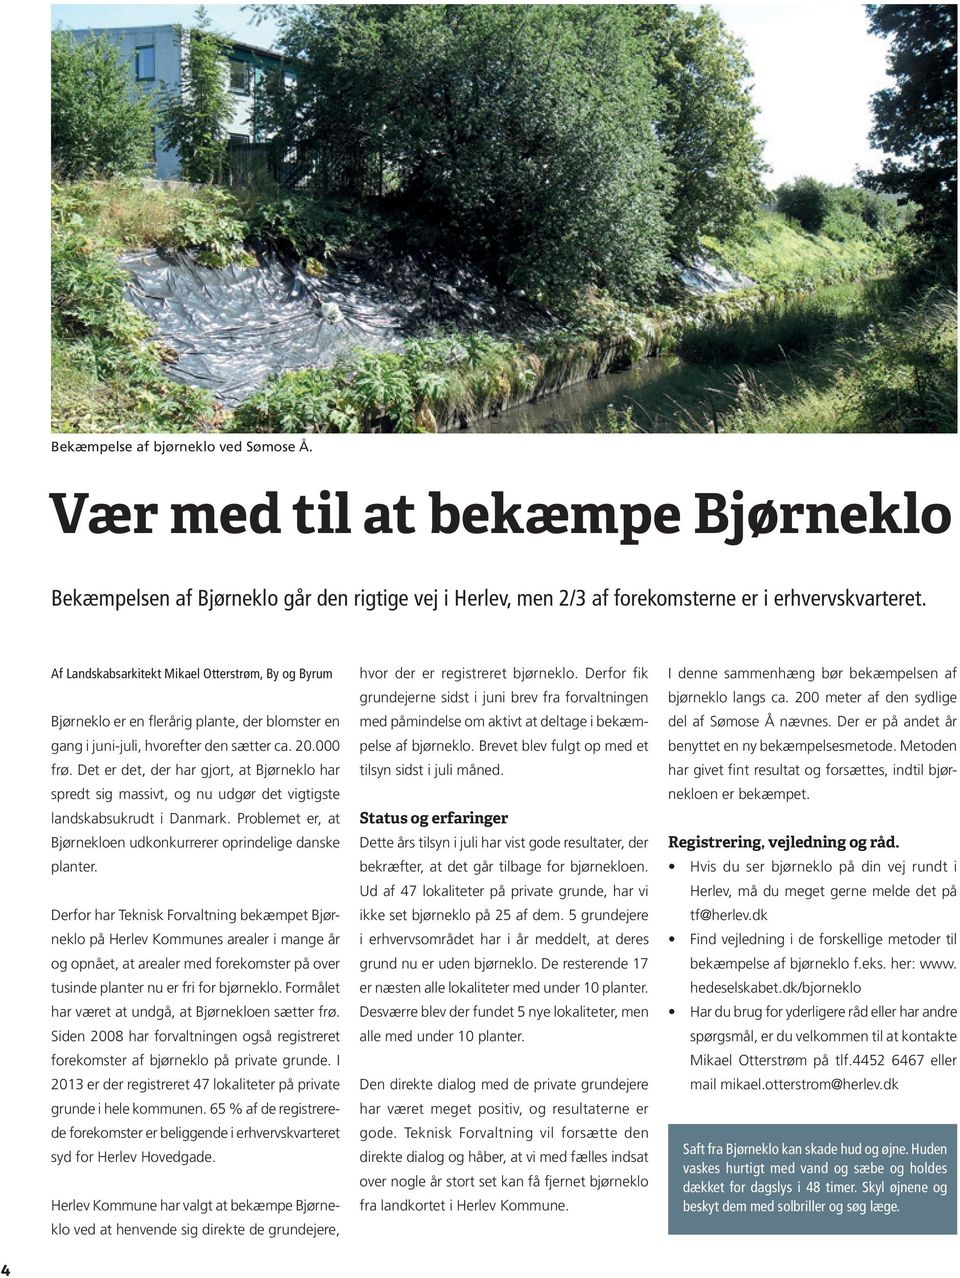 Det er det, der har gjort, at Bjørneklo har spredt sig massivt, og nu udgør det vigtigste landskabsukrudt i Danmark. Problemet er, at Bjørnekloen udkonkurrerer oprindelige danske planter.